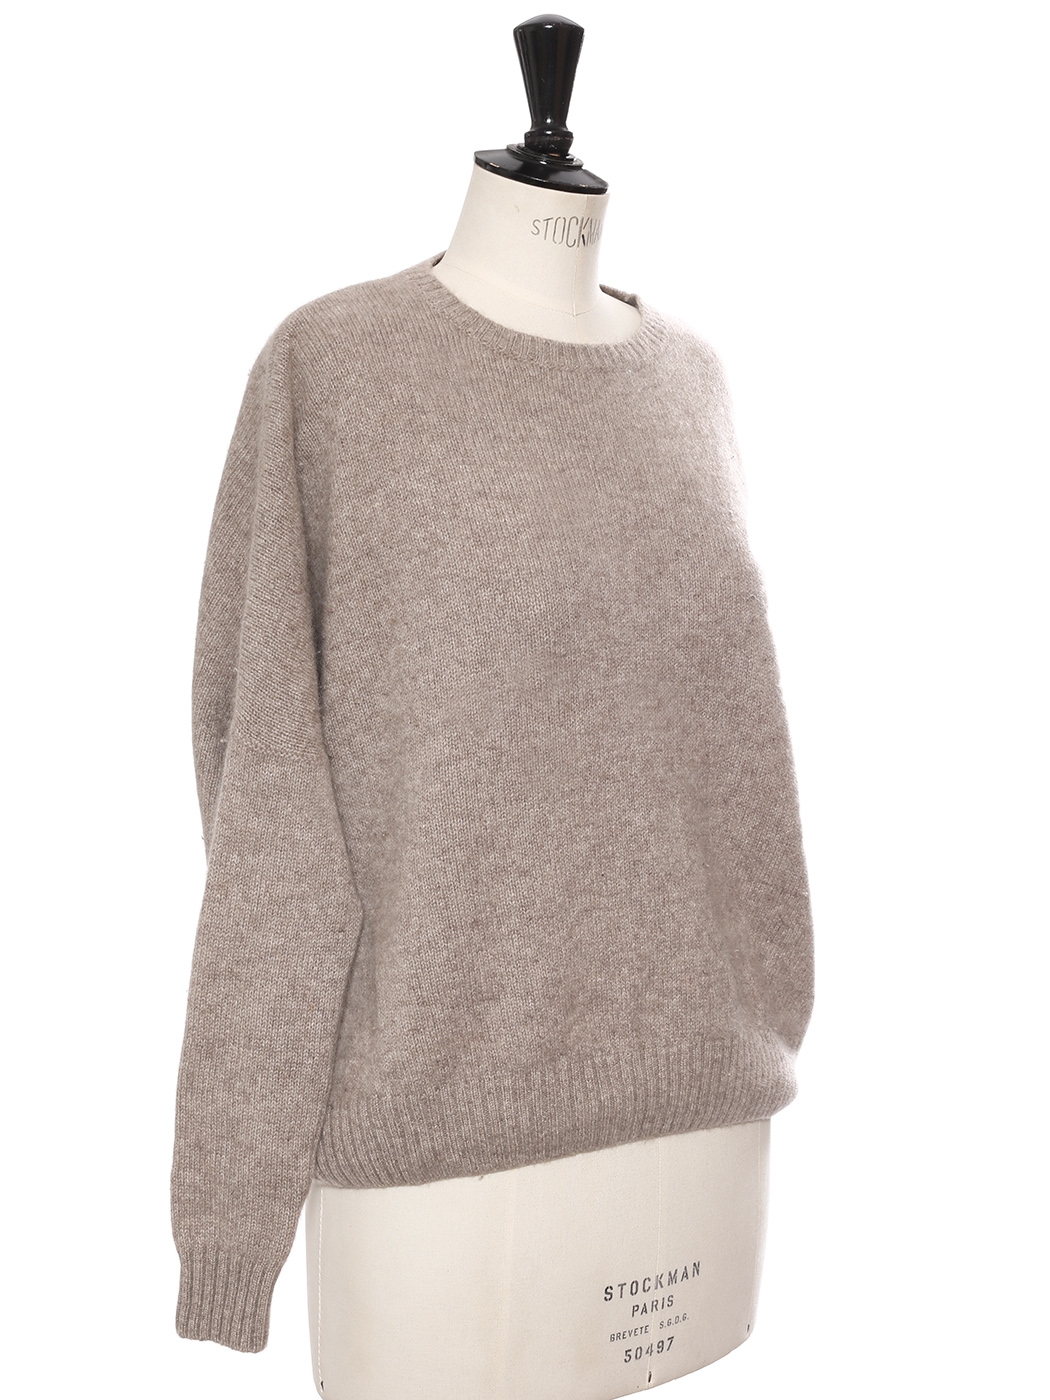 Louise Paris - KUJTEN Round neckline beige cashmere sweater Retail ...